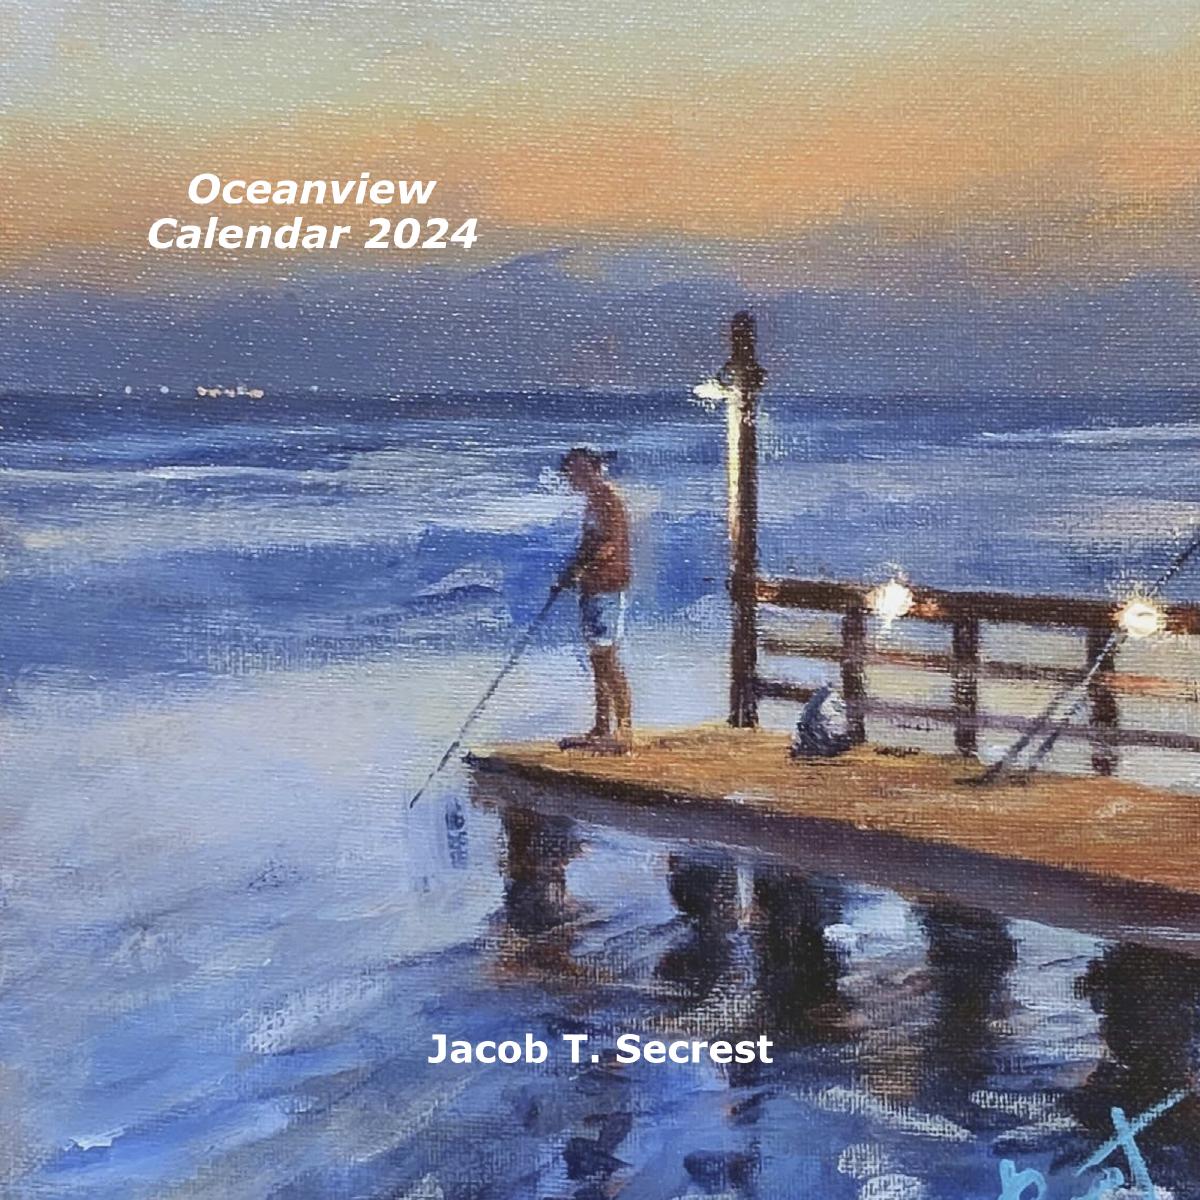 Oceanview Calendar 2024 by Jacob Secrest